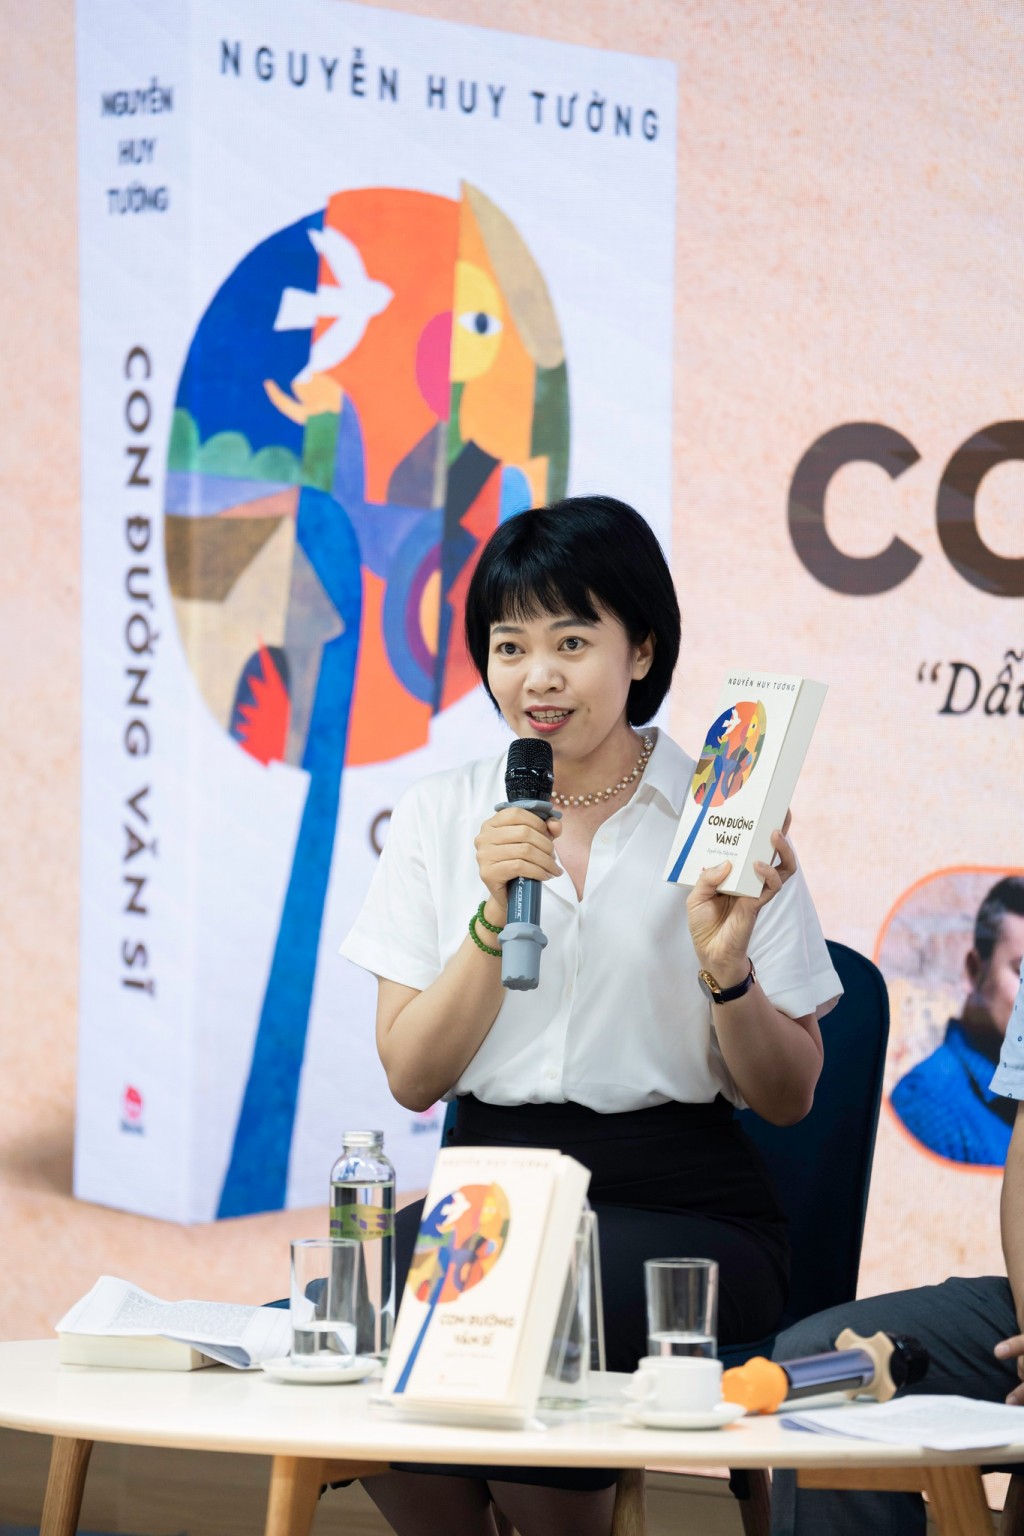 Tiến sĩ Văn học Đỗ Thanh Nga nhấn mạnh về đóng góp của nhà văn Nguyễn Huy Tưởng với văn chương nước nhà